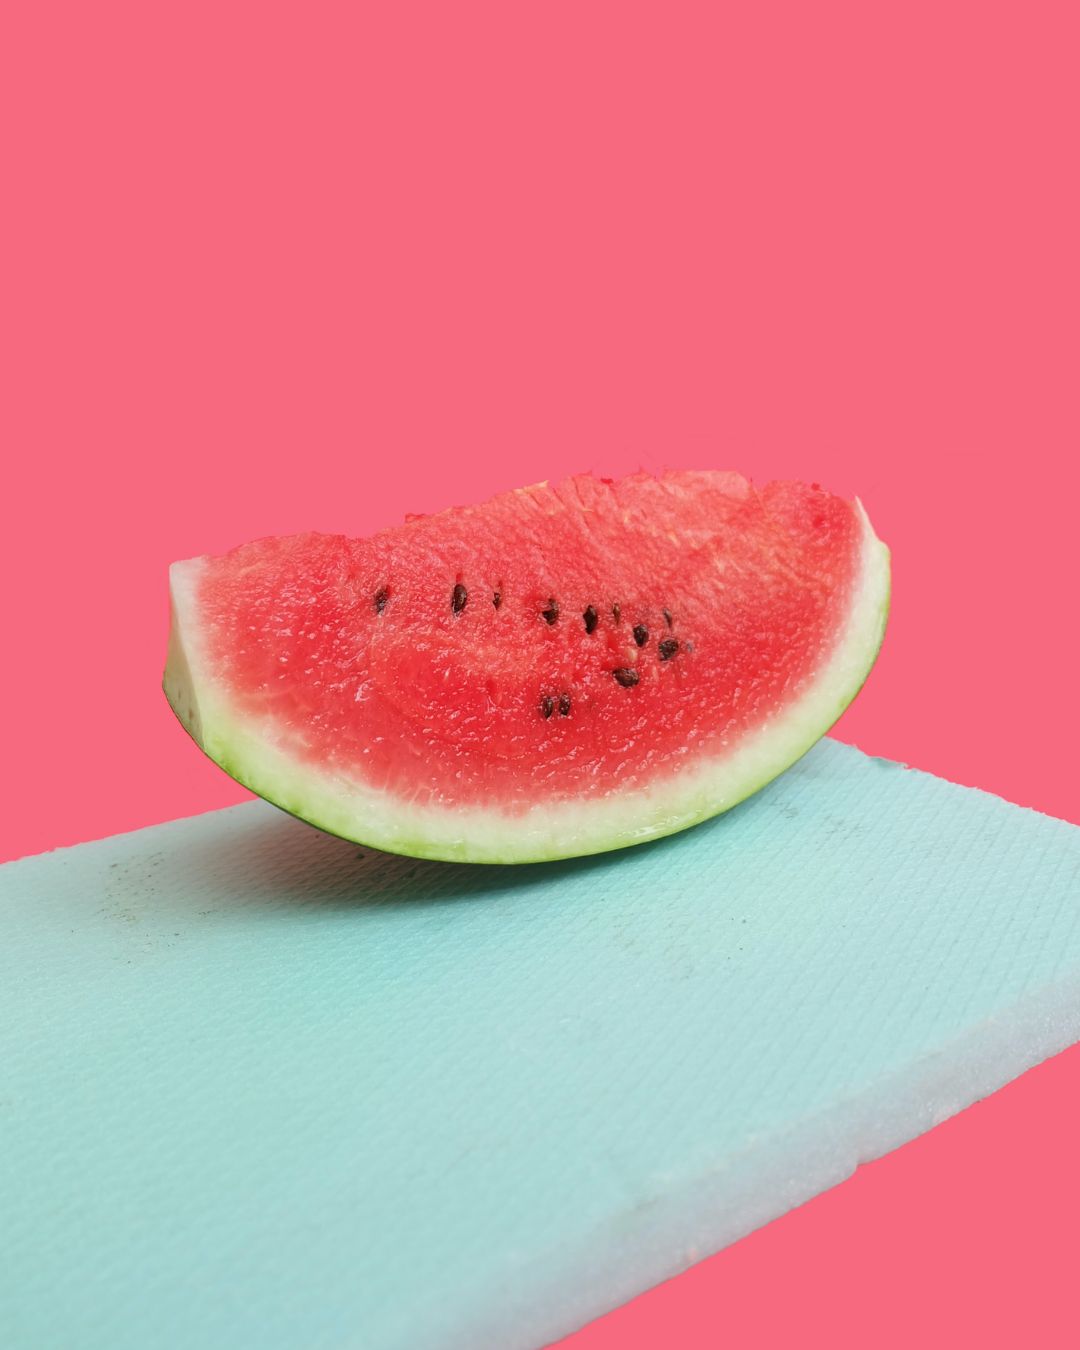 Sparkling Watermelon Refresher